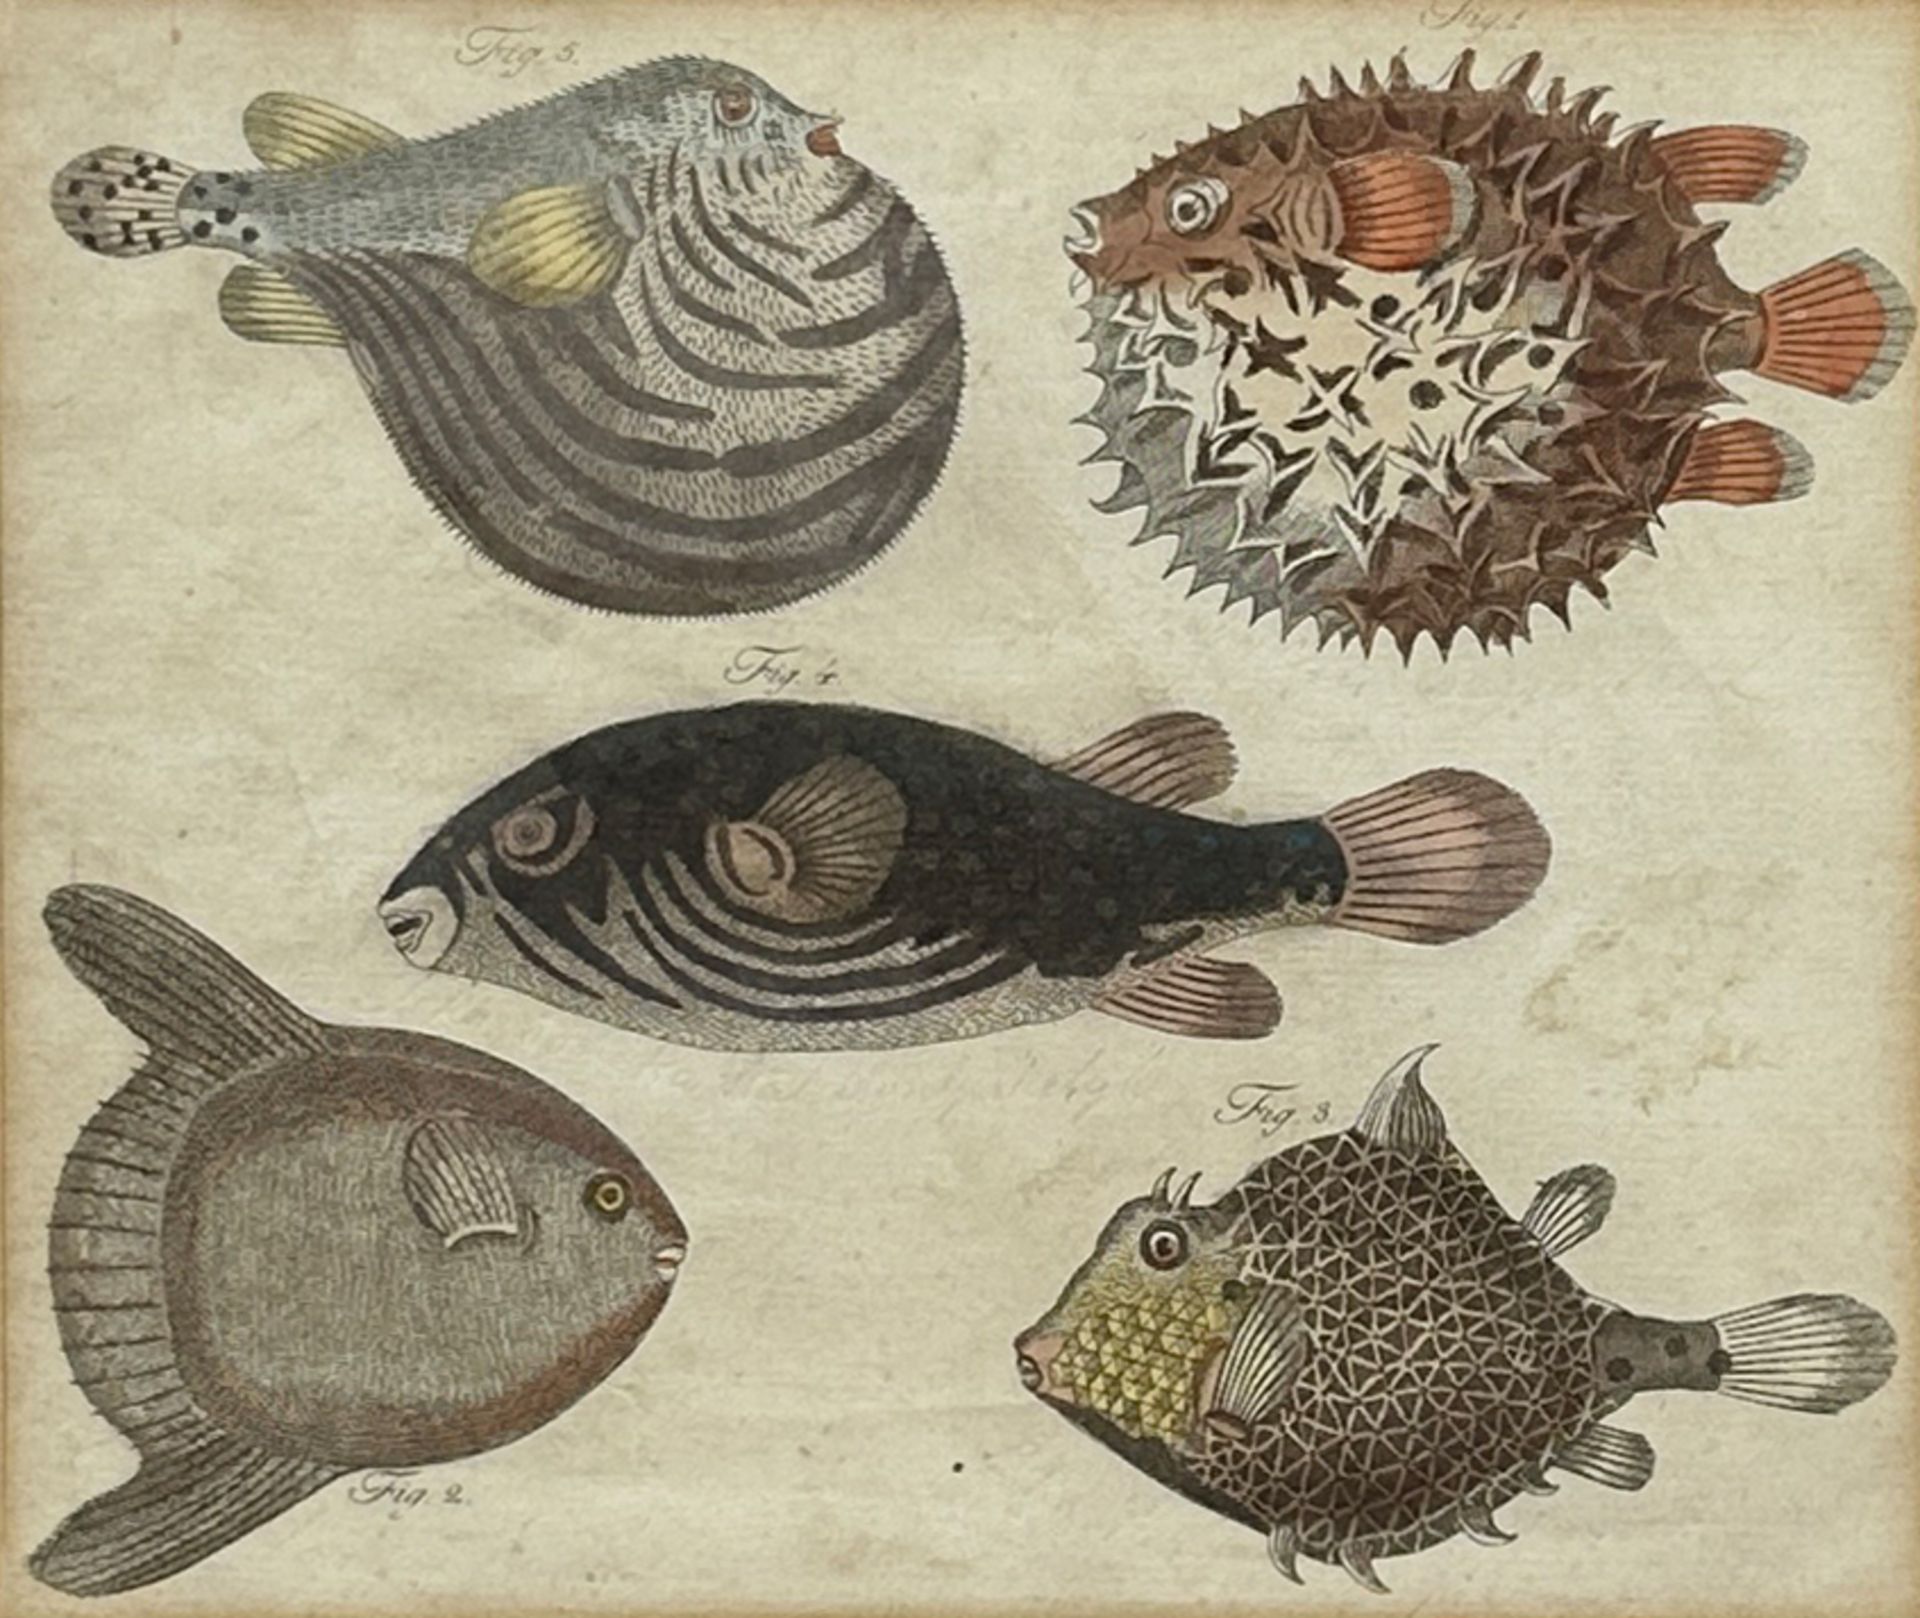 Friedrich Justin BERTUCH (1747 - 1822). "Wunderbare Fische". 1808.